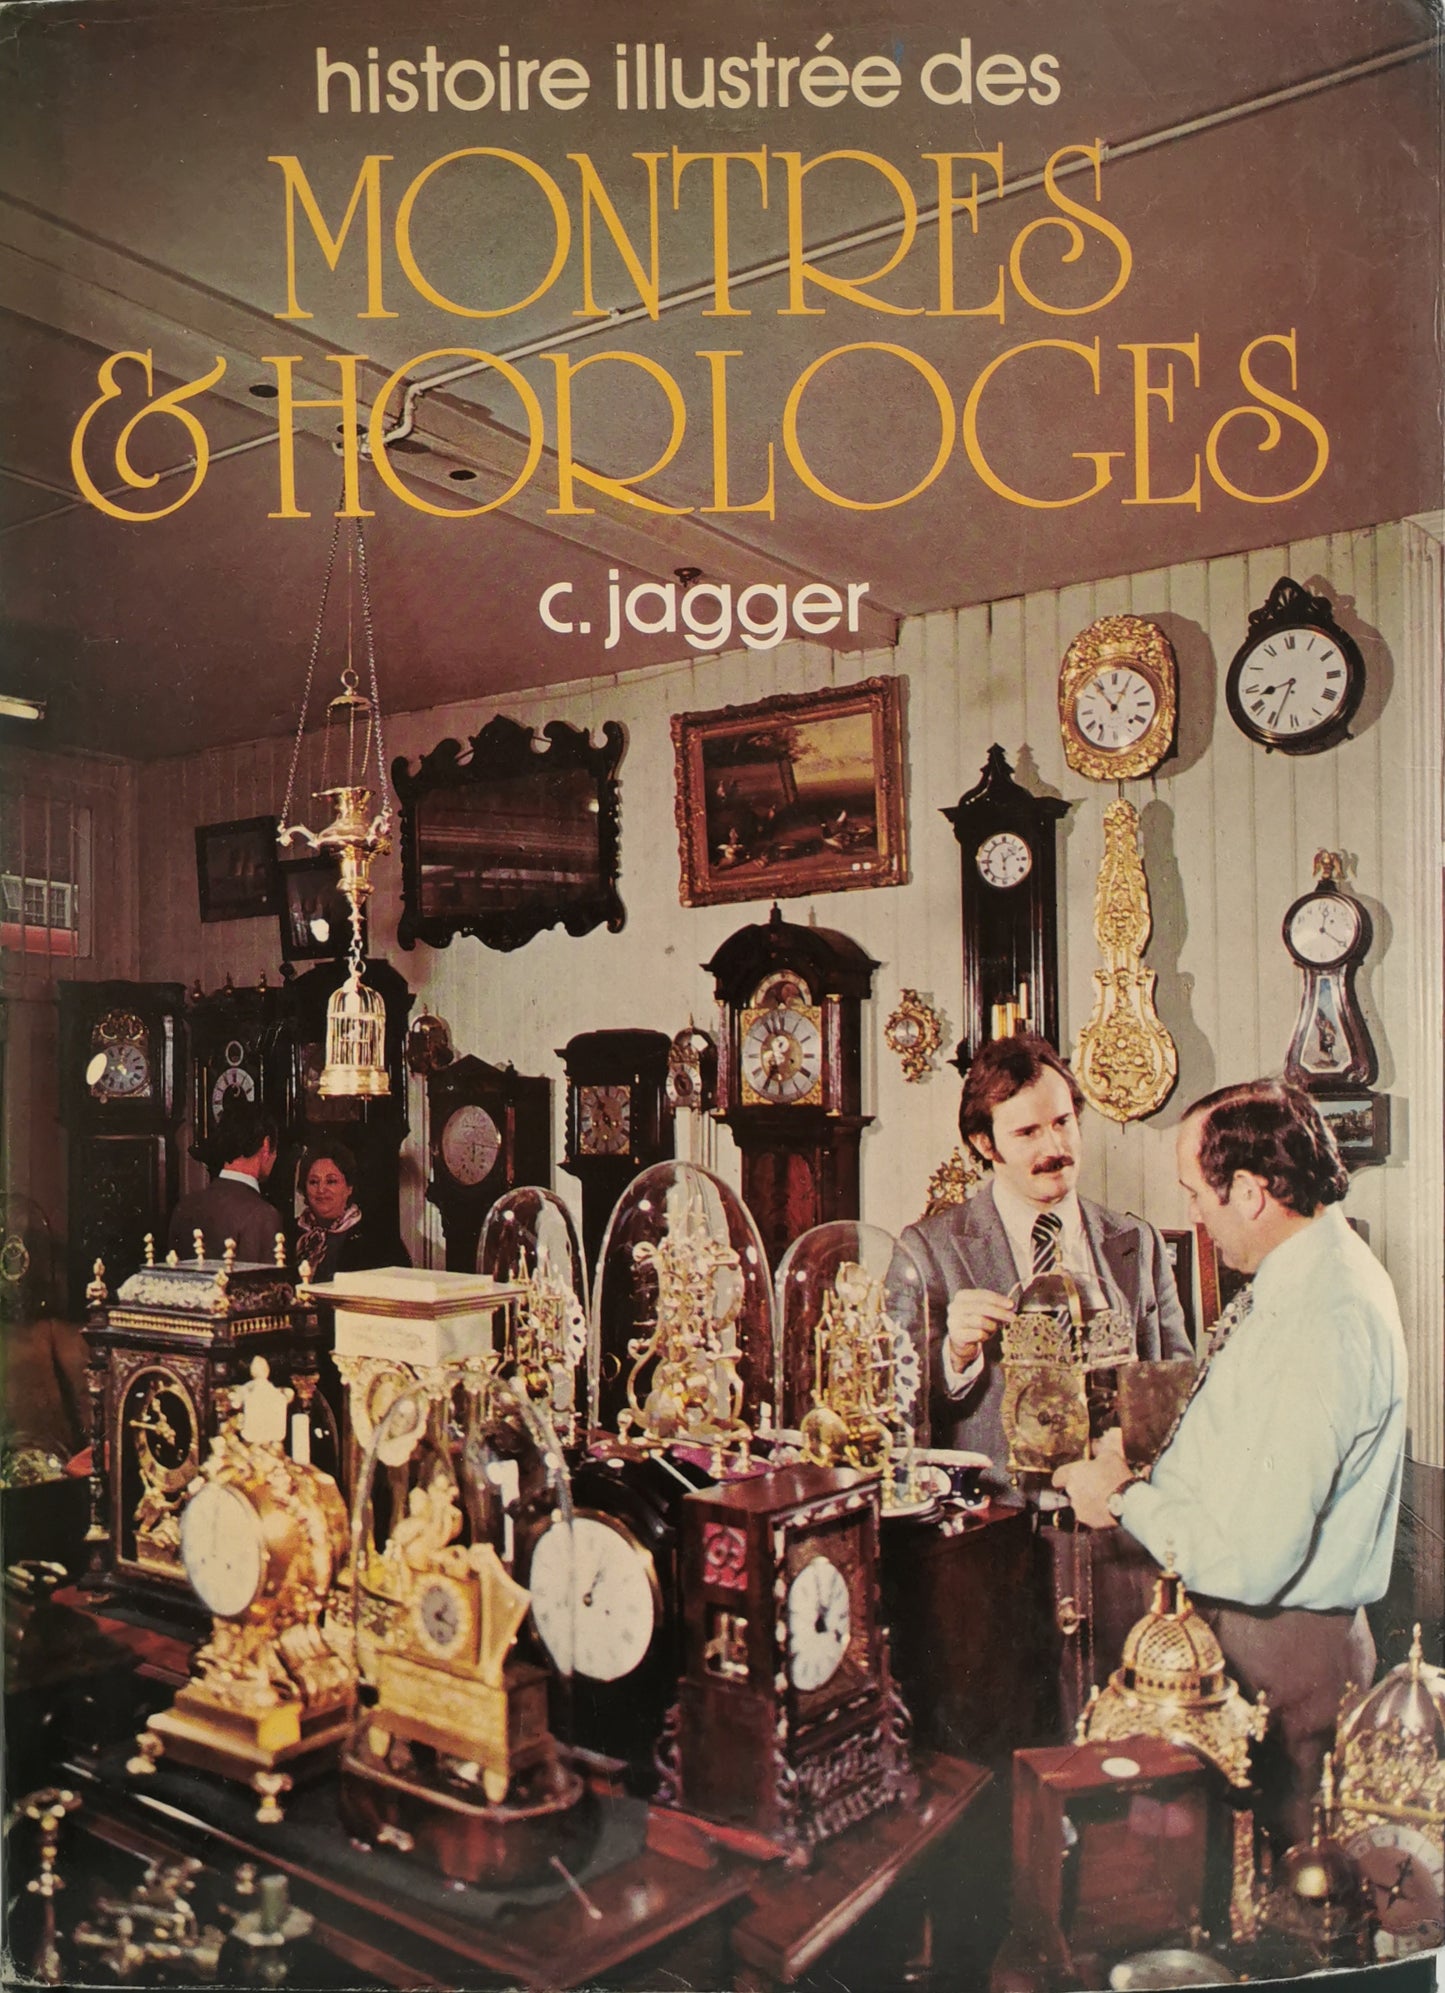 Histoire illustrée des montres et horloges, C. Jagger, ed. Princesse, 1977.